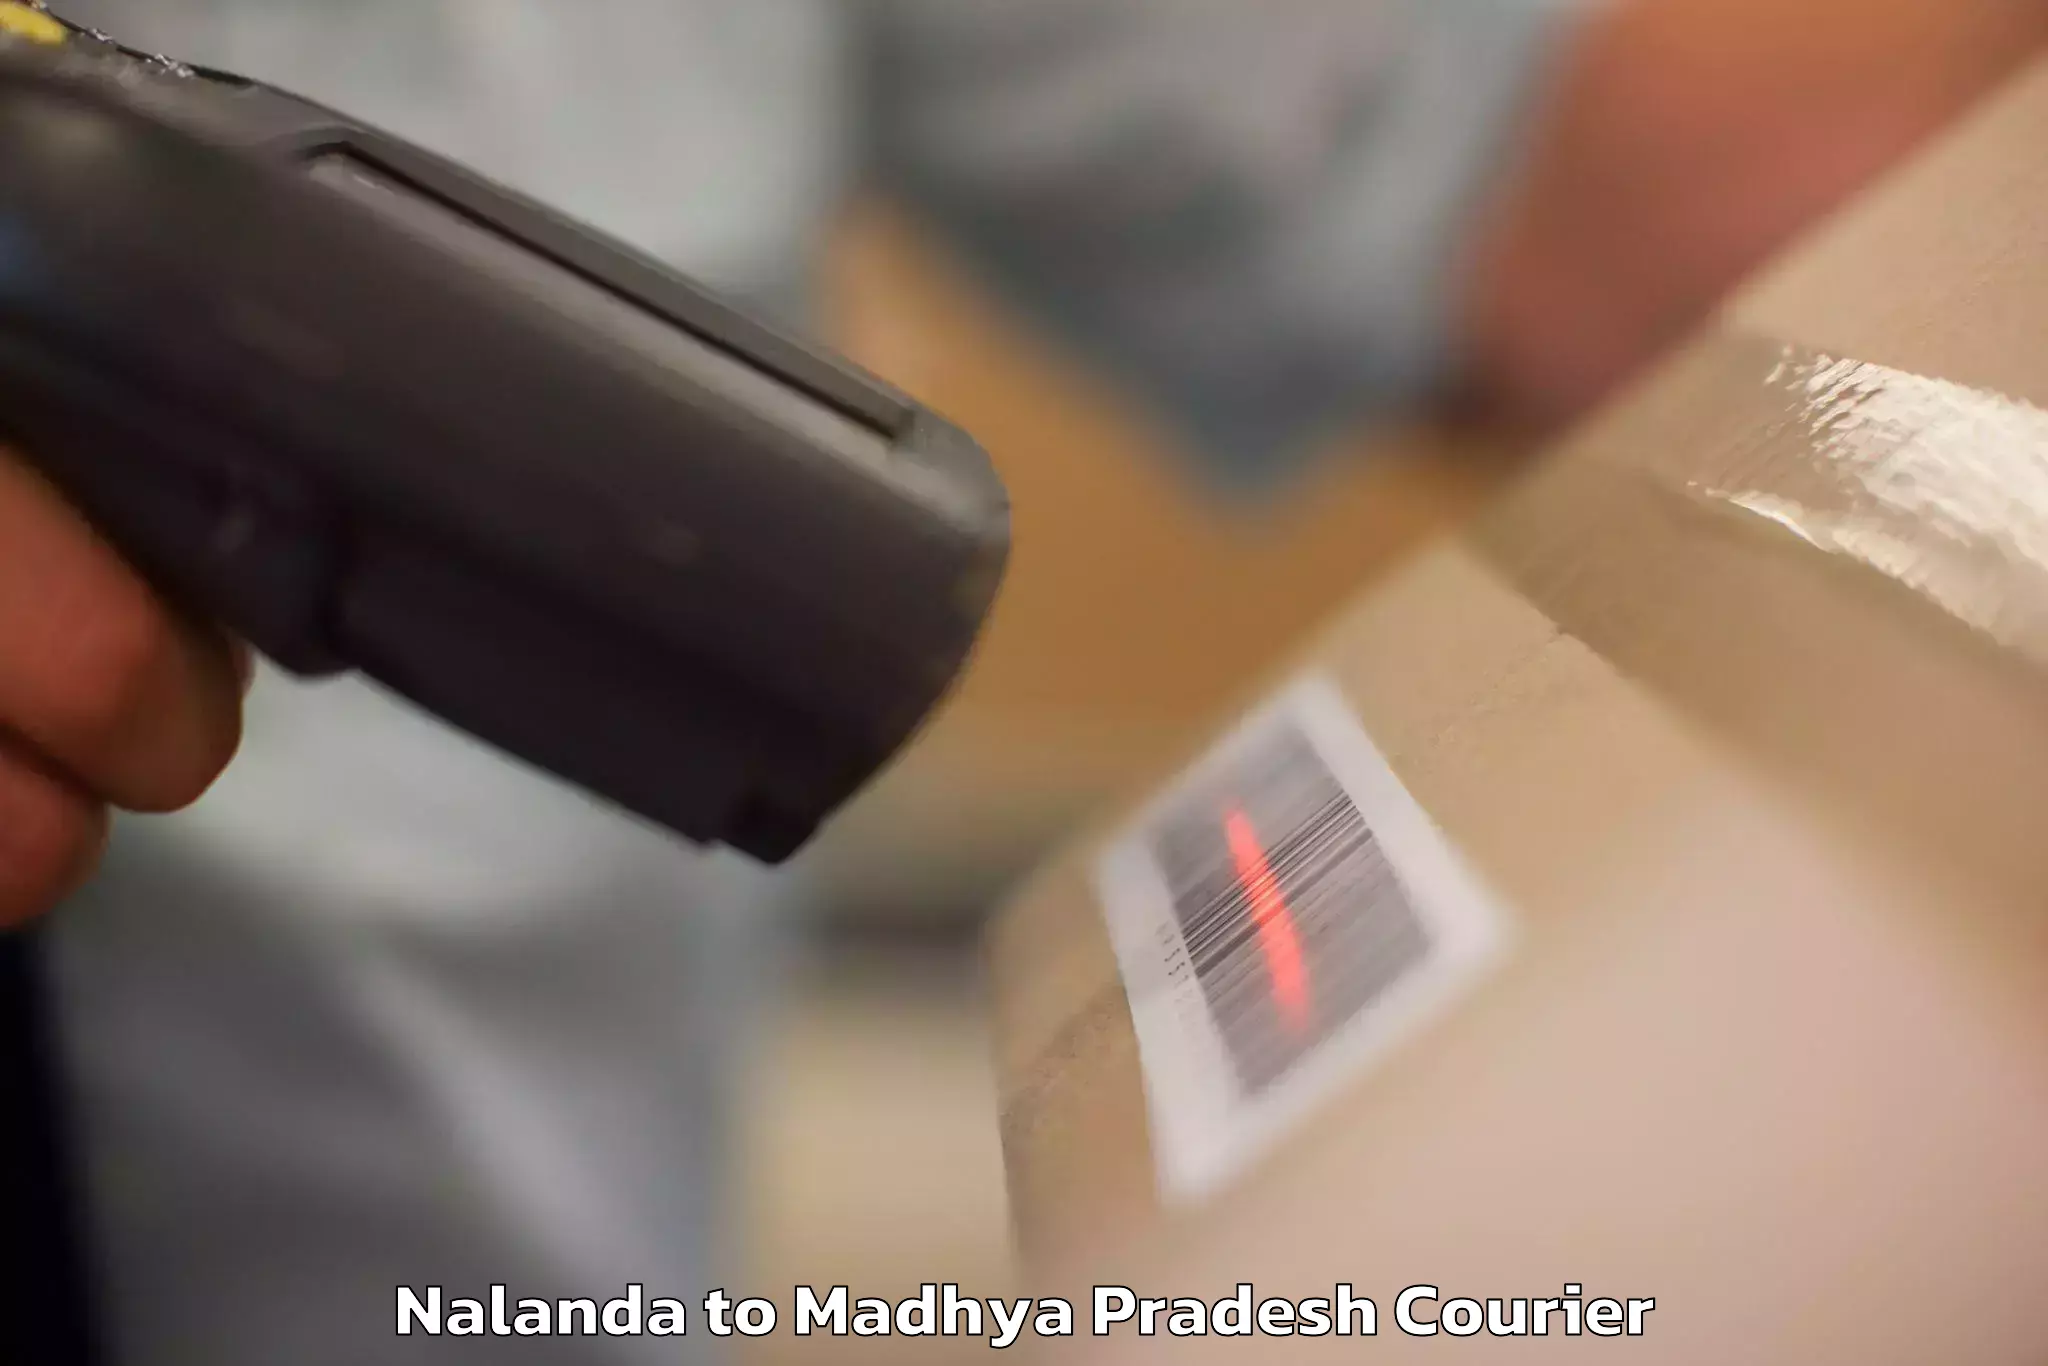 Luggage storage and delivery Nalanda to Sleemanabad